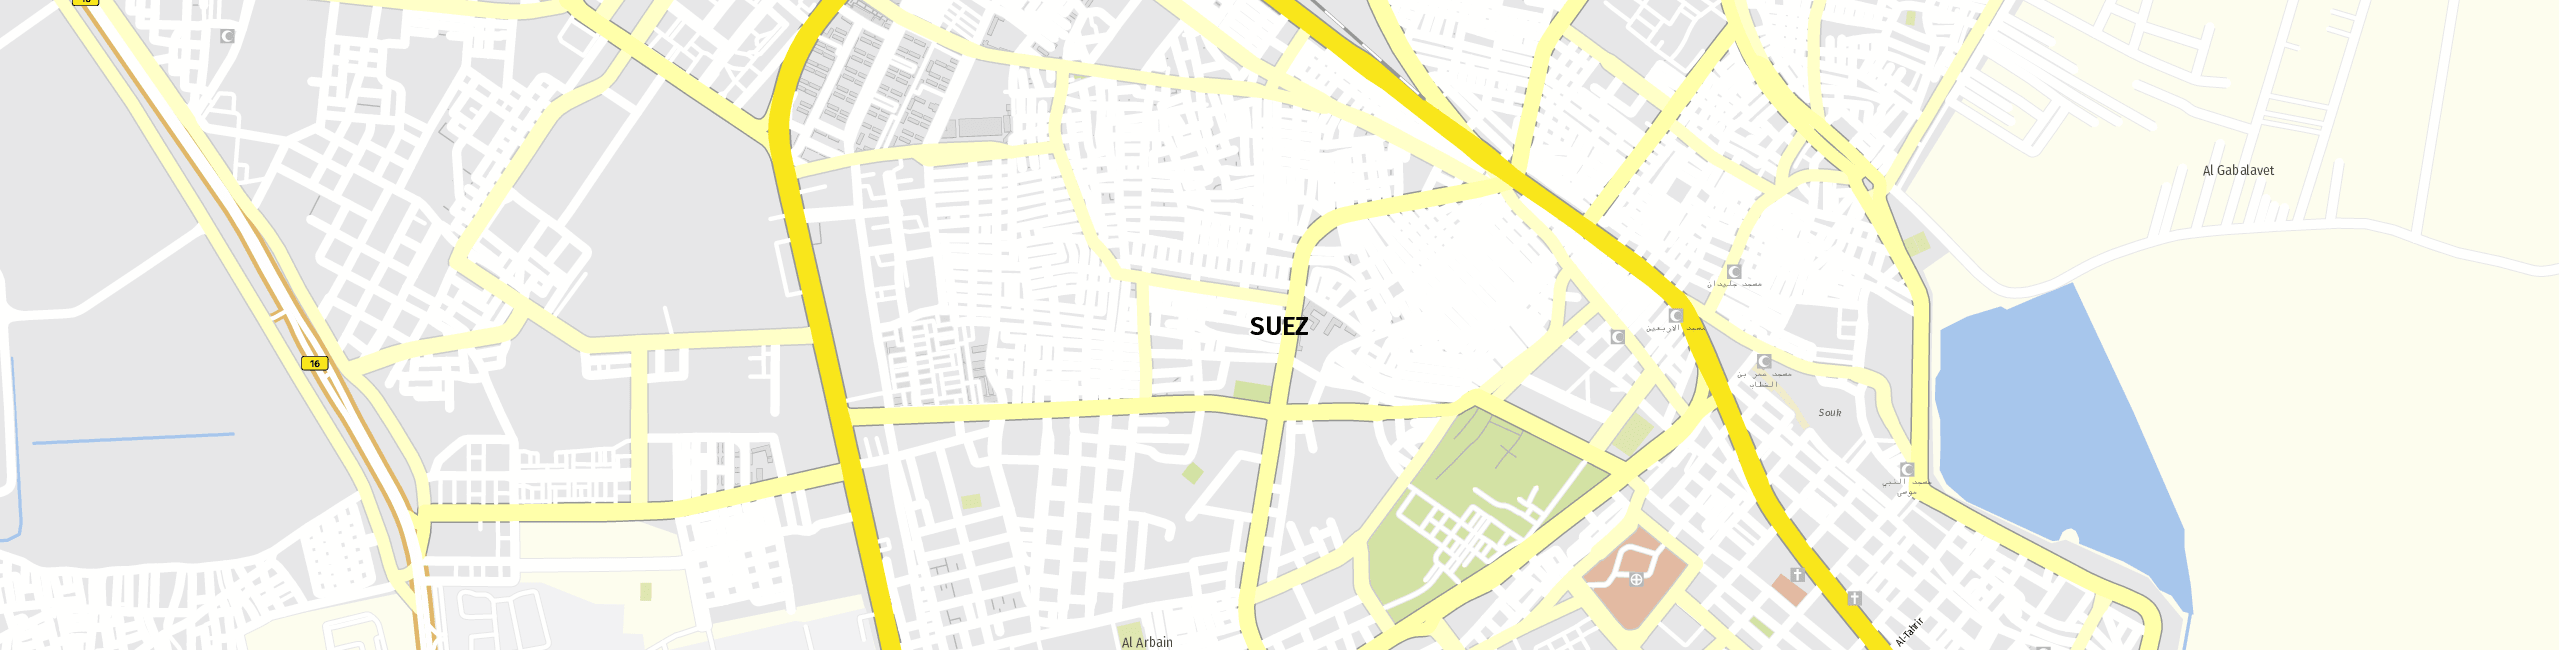 Stadtplan Suez zum Downloaden.